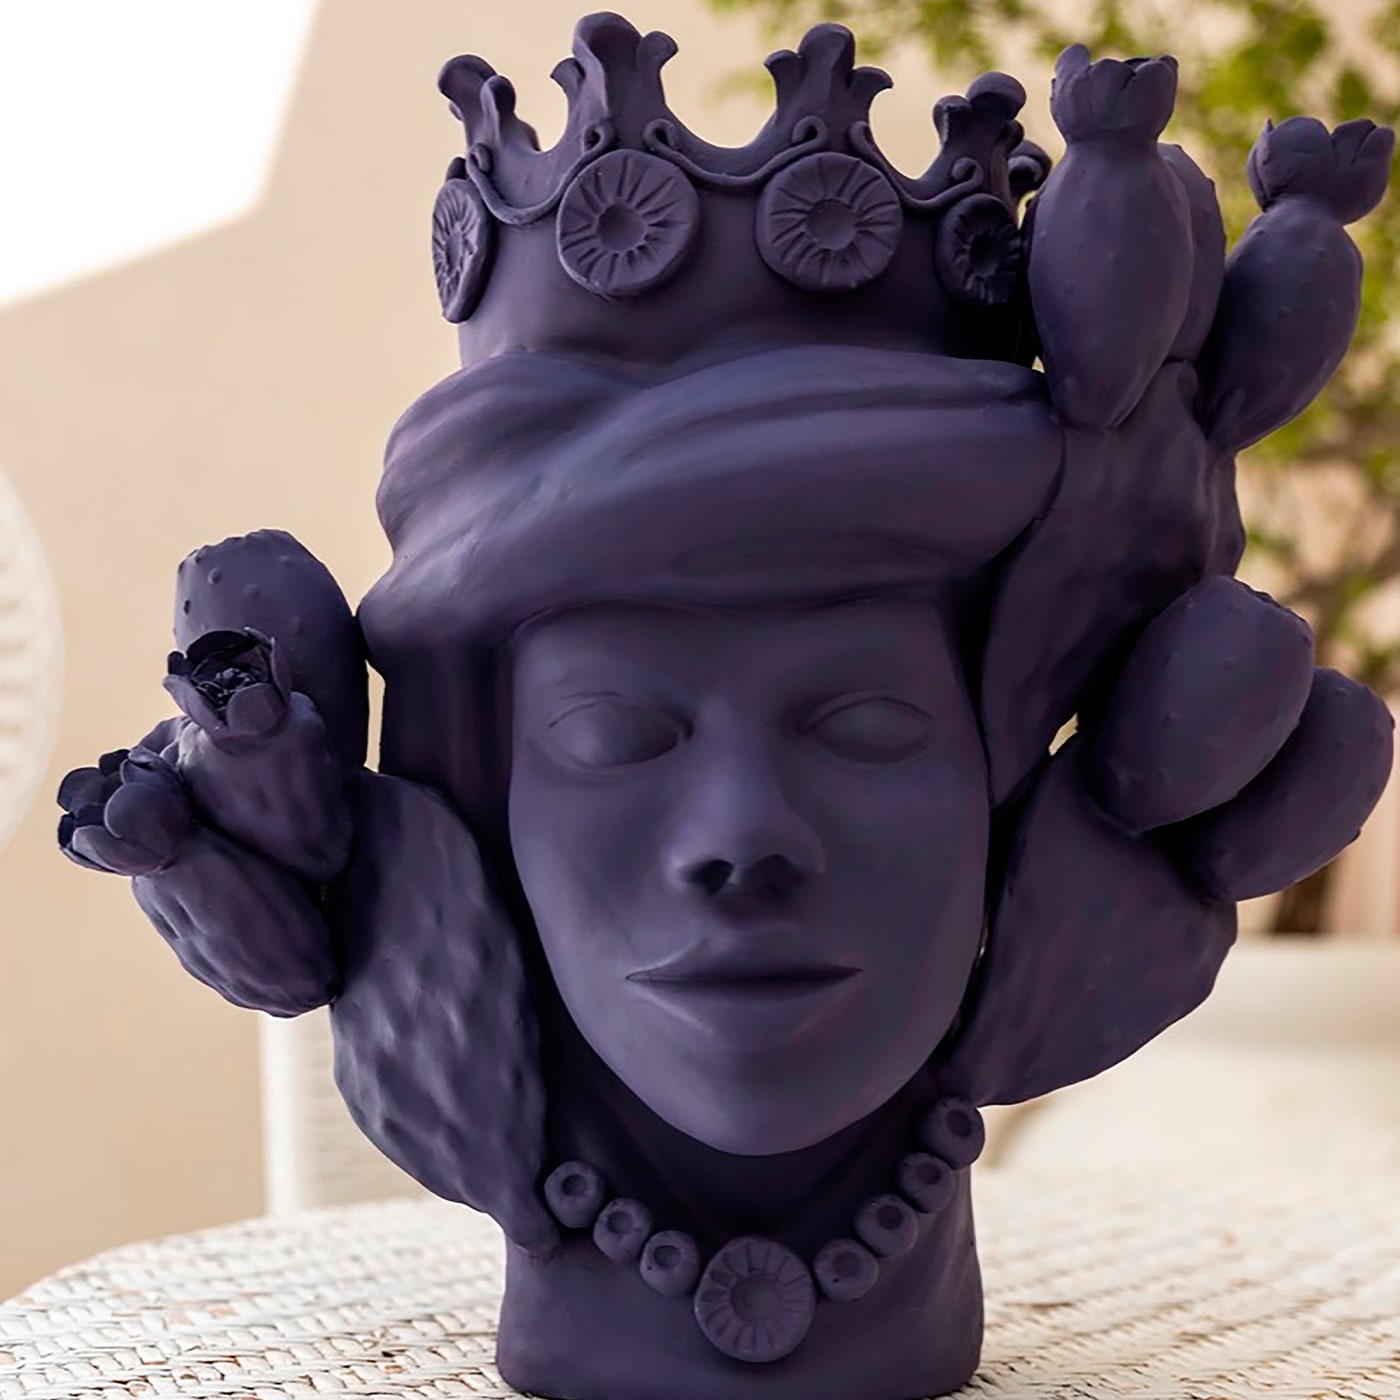 Moor's Head Violet Sculpture